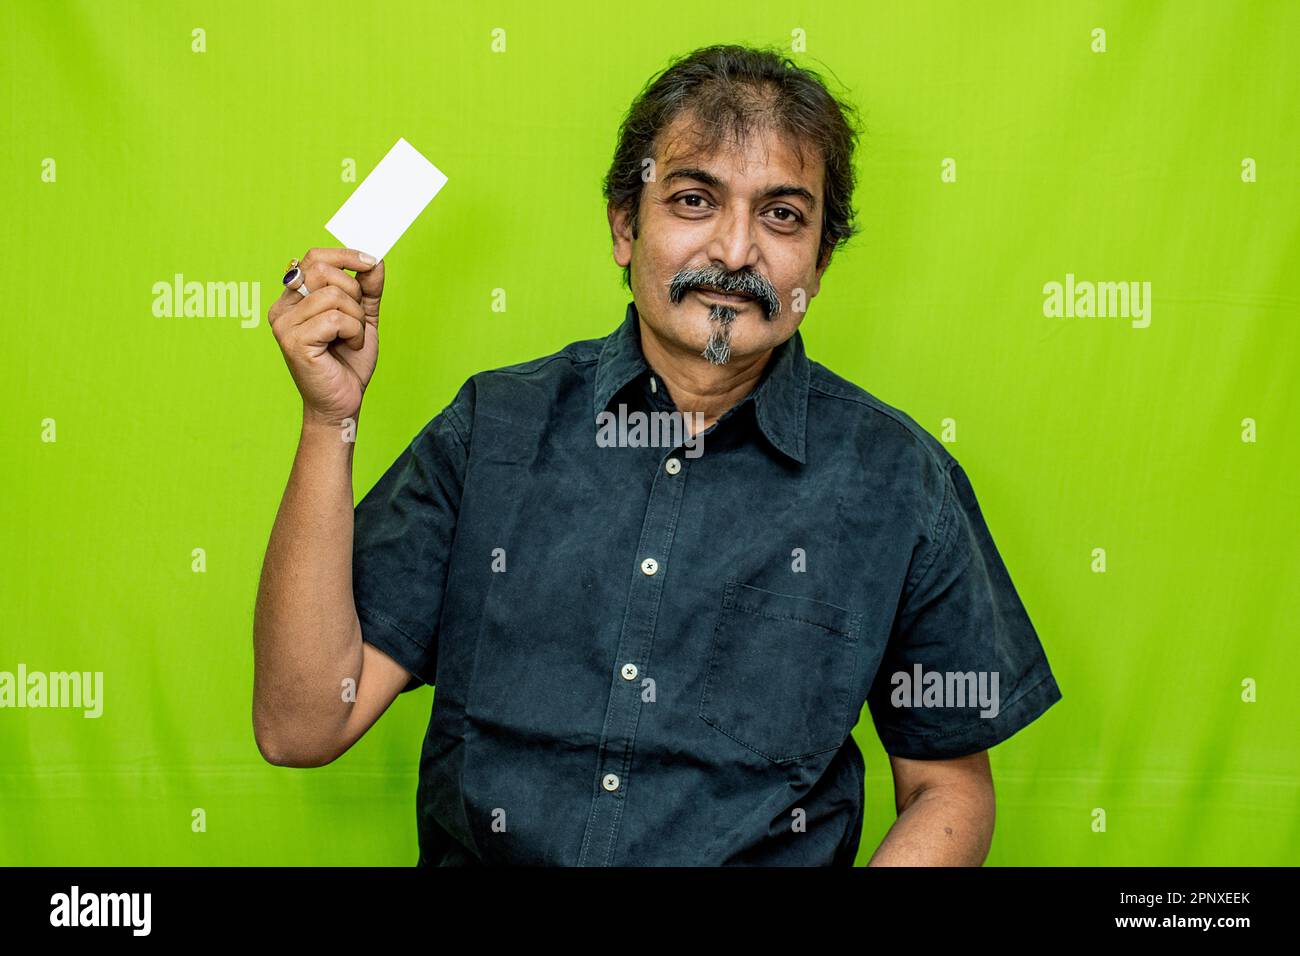 Ein lächelnder Geschäftsmann in schwarzem Hemd und einer Brille posiert mit einer leeren Kredit-/Debitkarte in der rechten Hand vor einem grünen Hintergrund Stockfoto